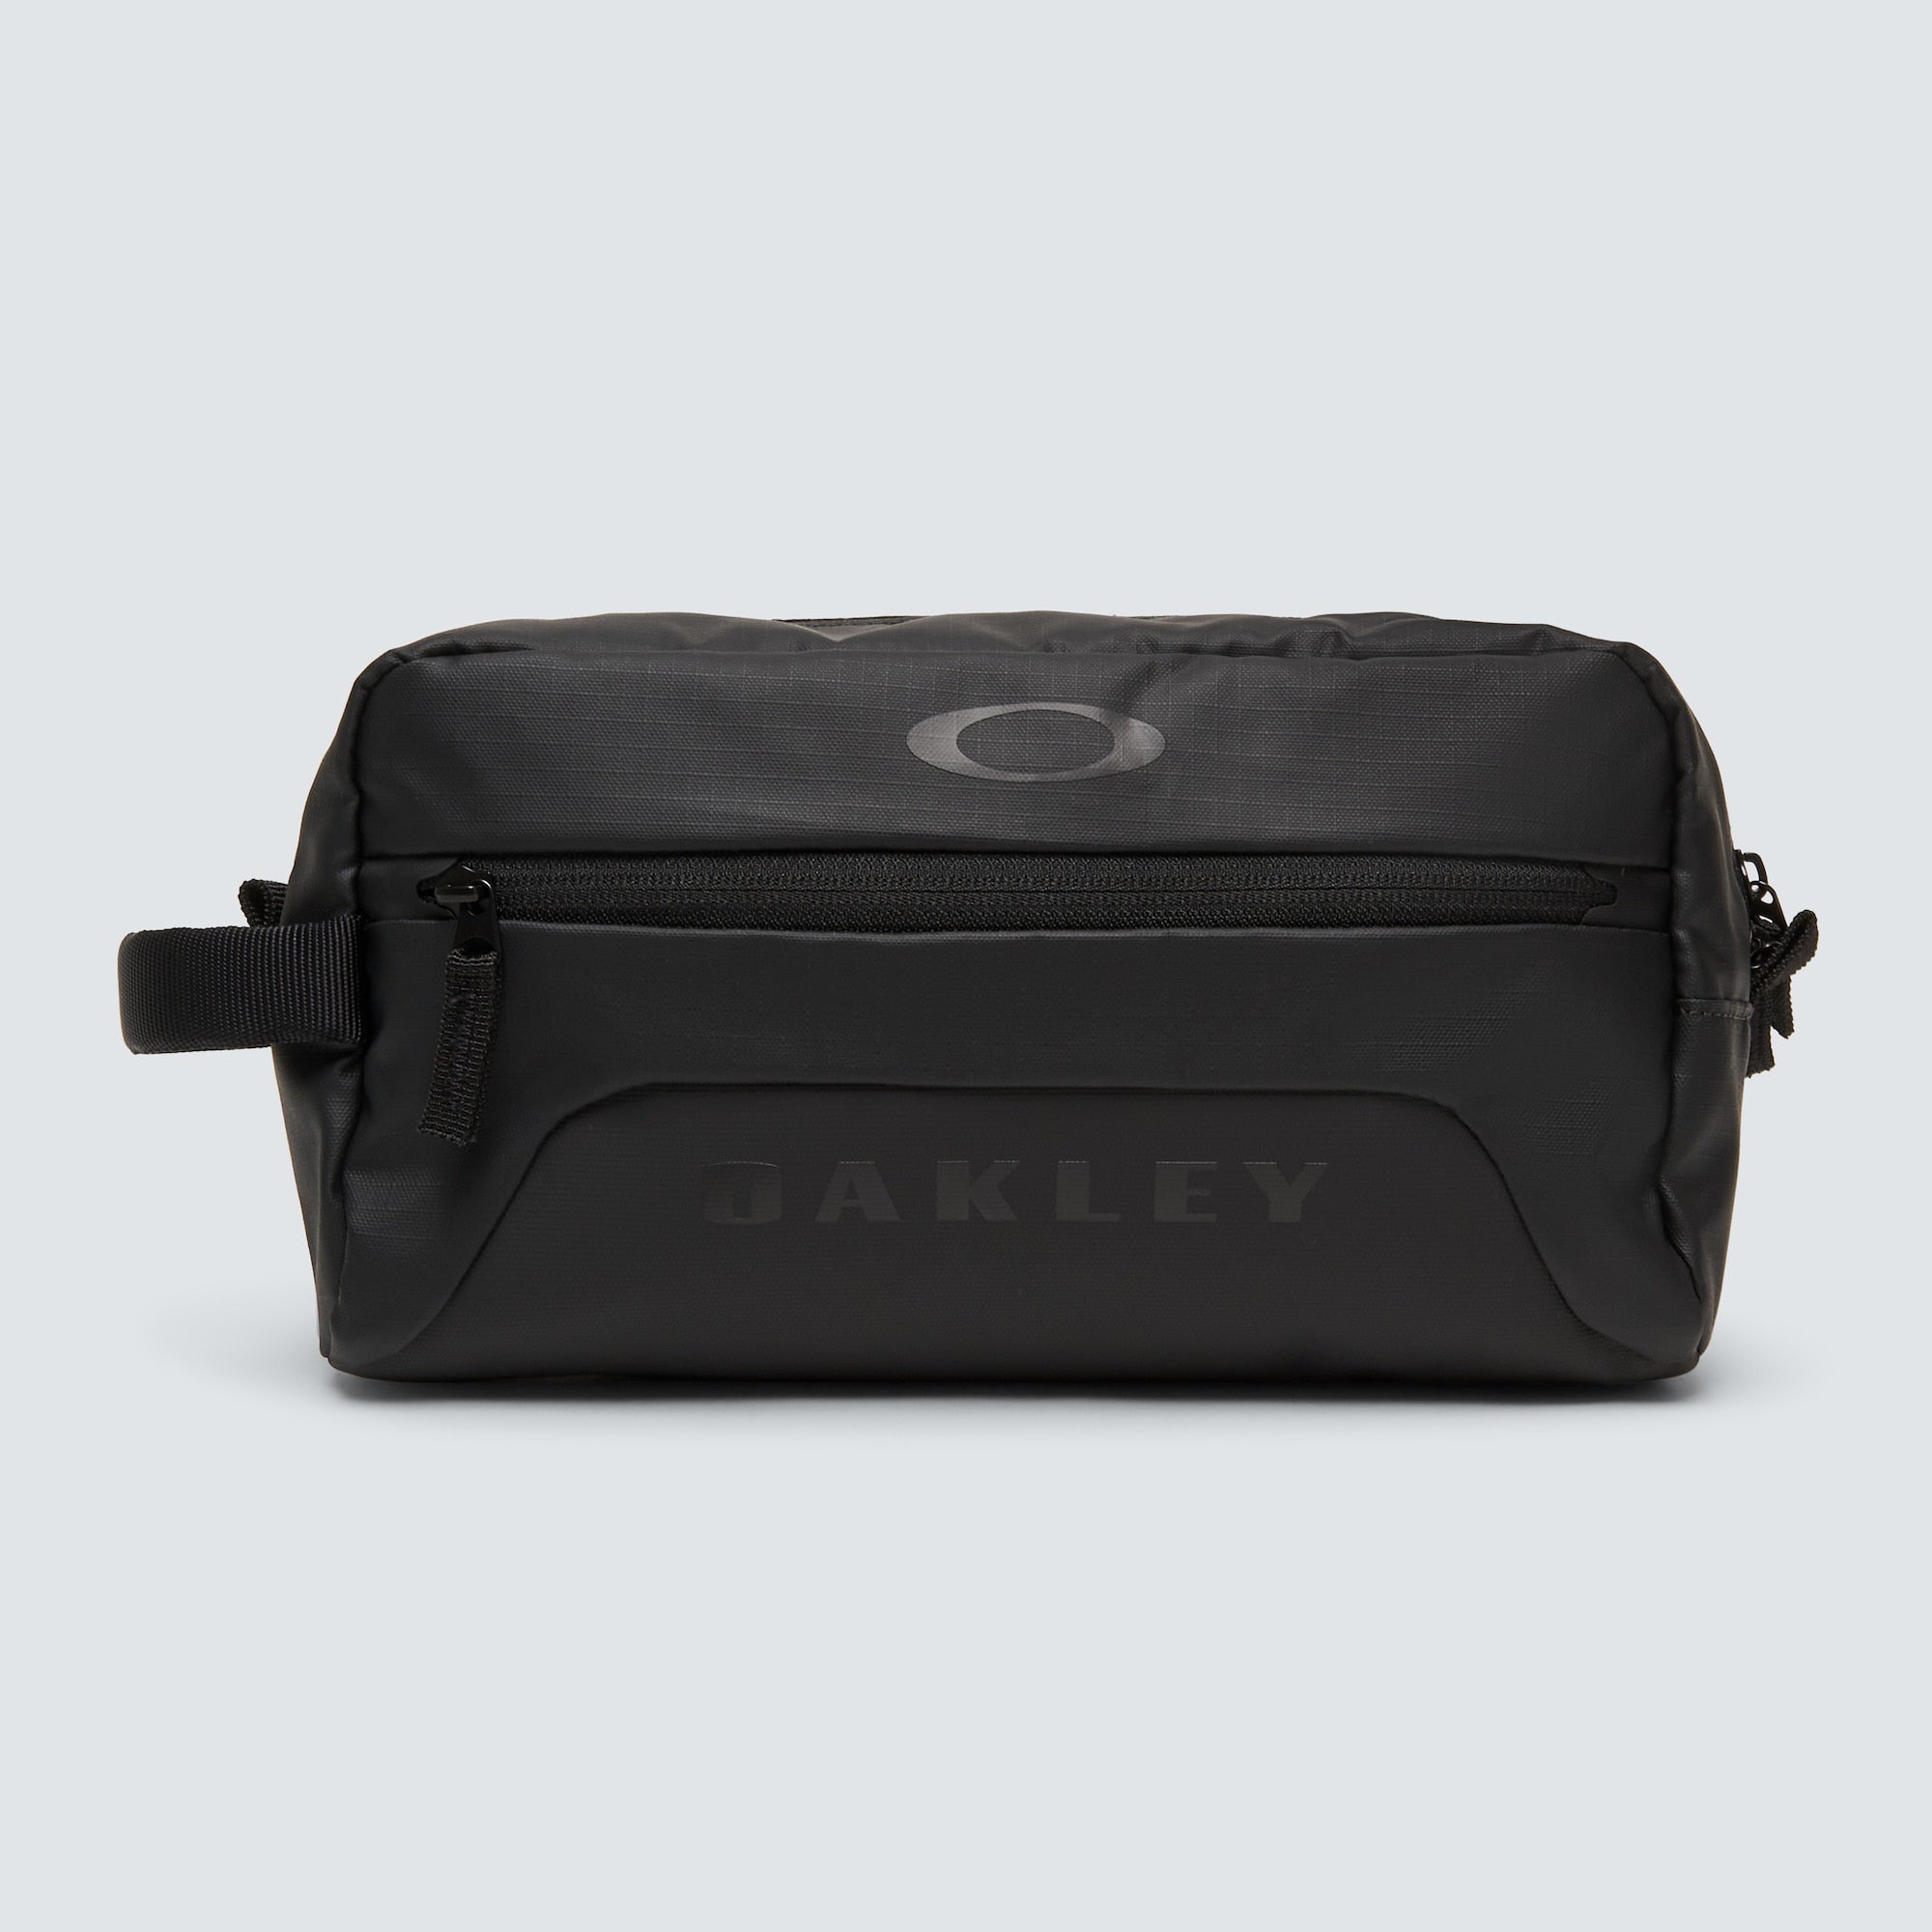 Oakley ROADSURFER Beauty Case